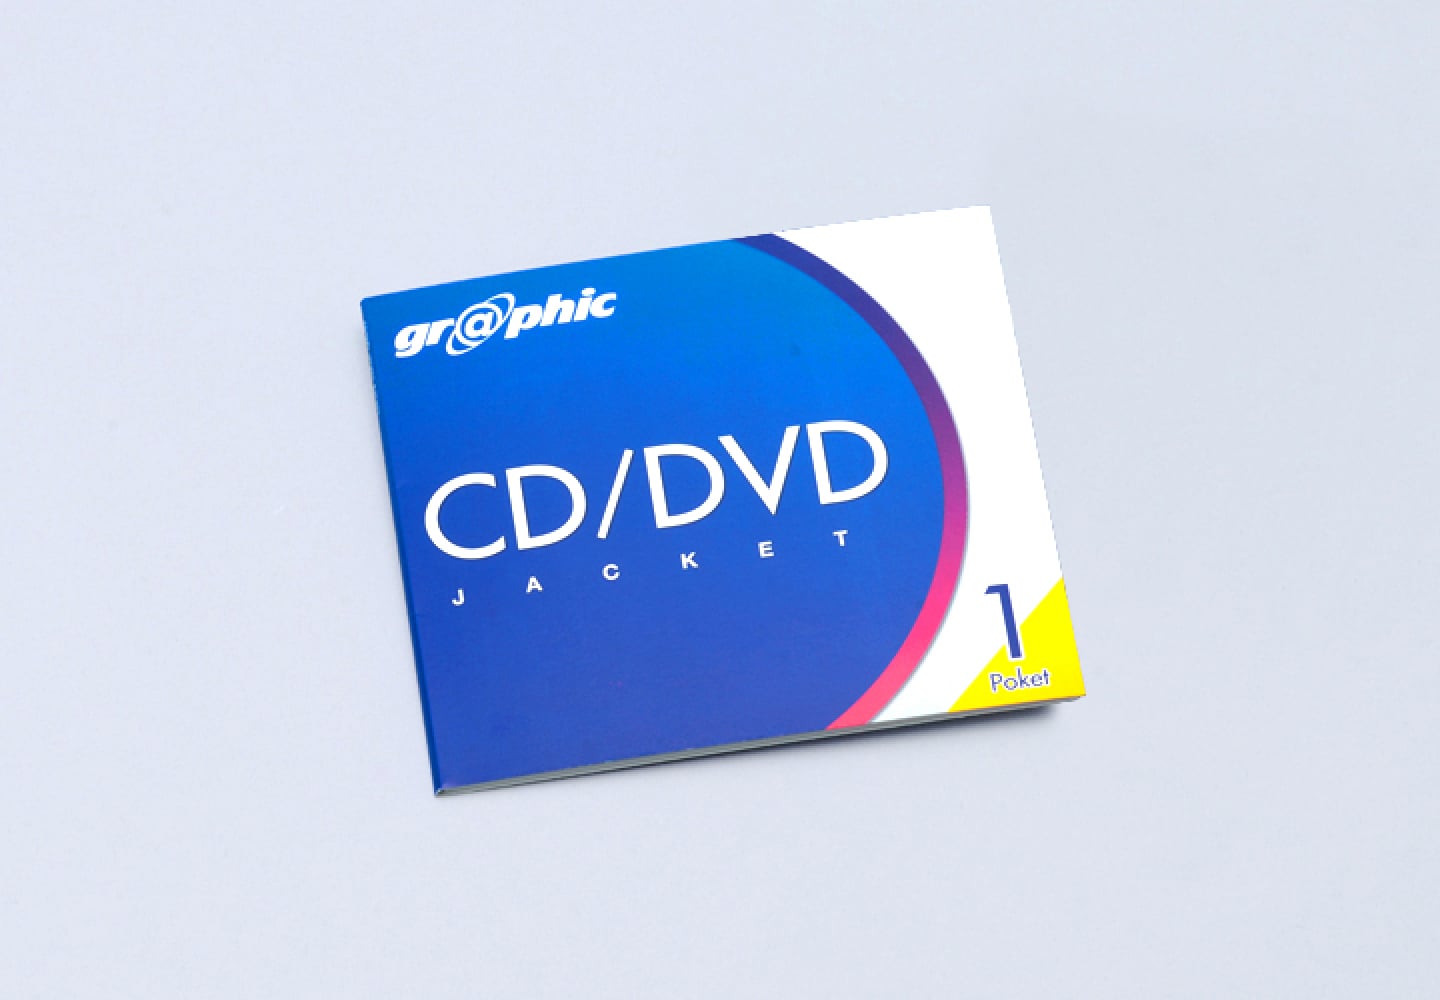 1ポケット CD/DVDジャケット印刷のイメージ